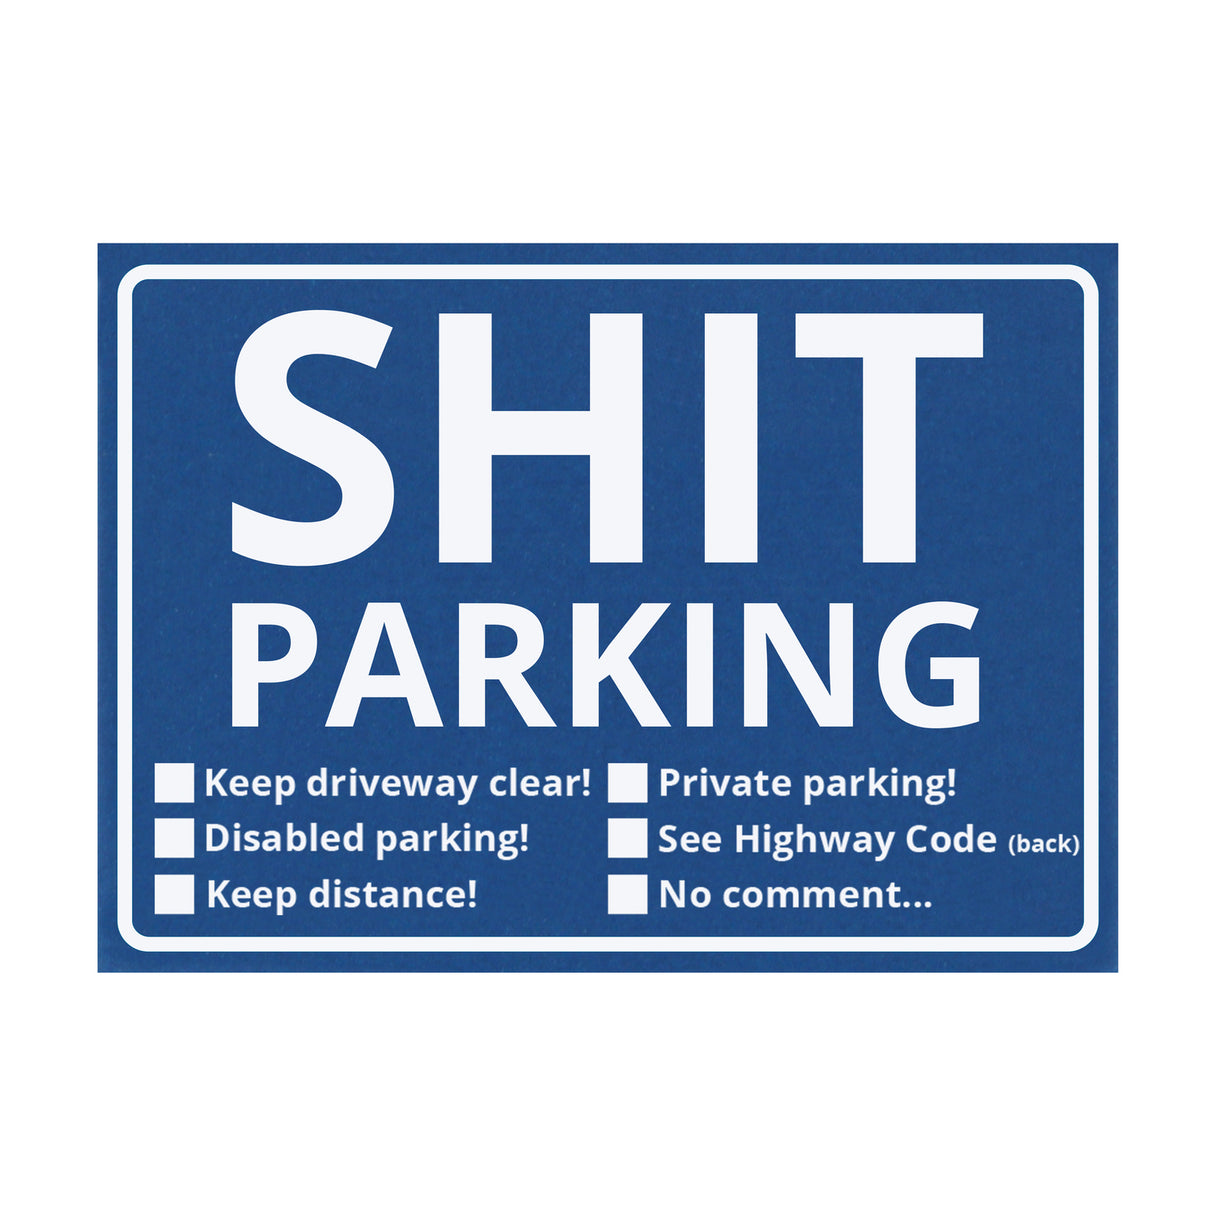 Shit Parking Scheisse Geparkt! Notizblock Englisch: Kaufen und